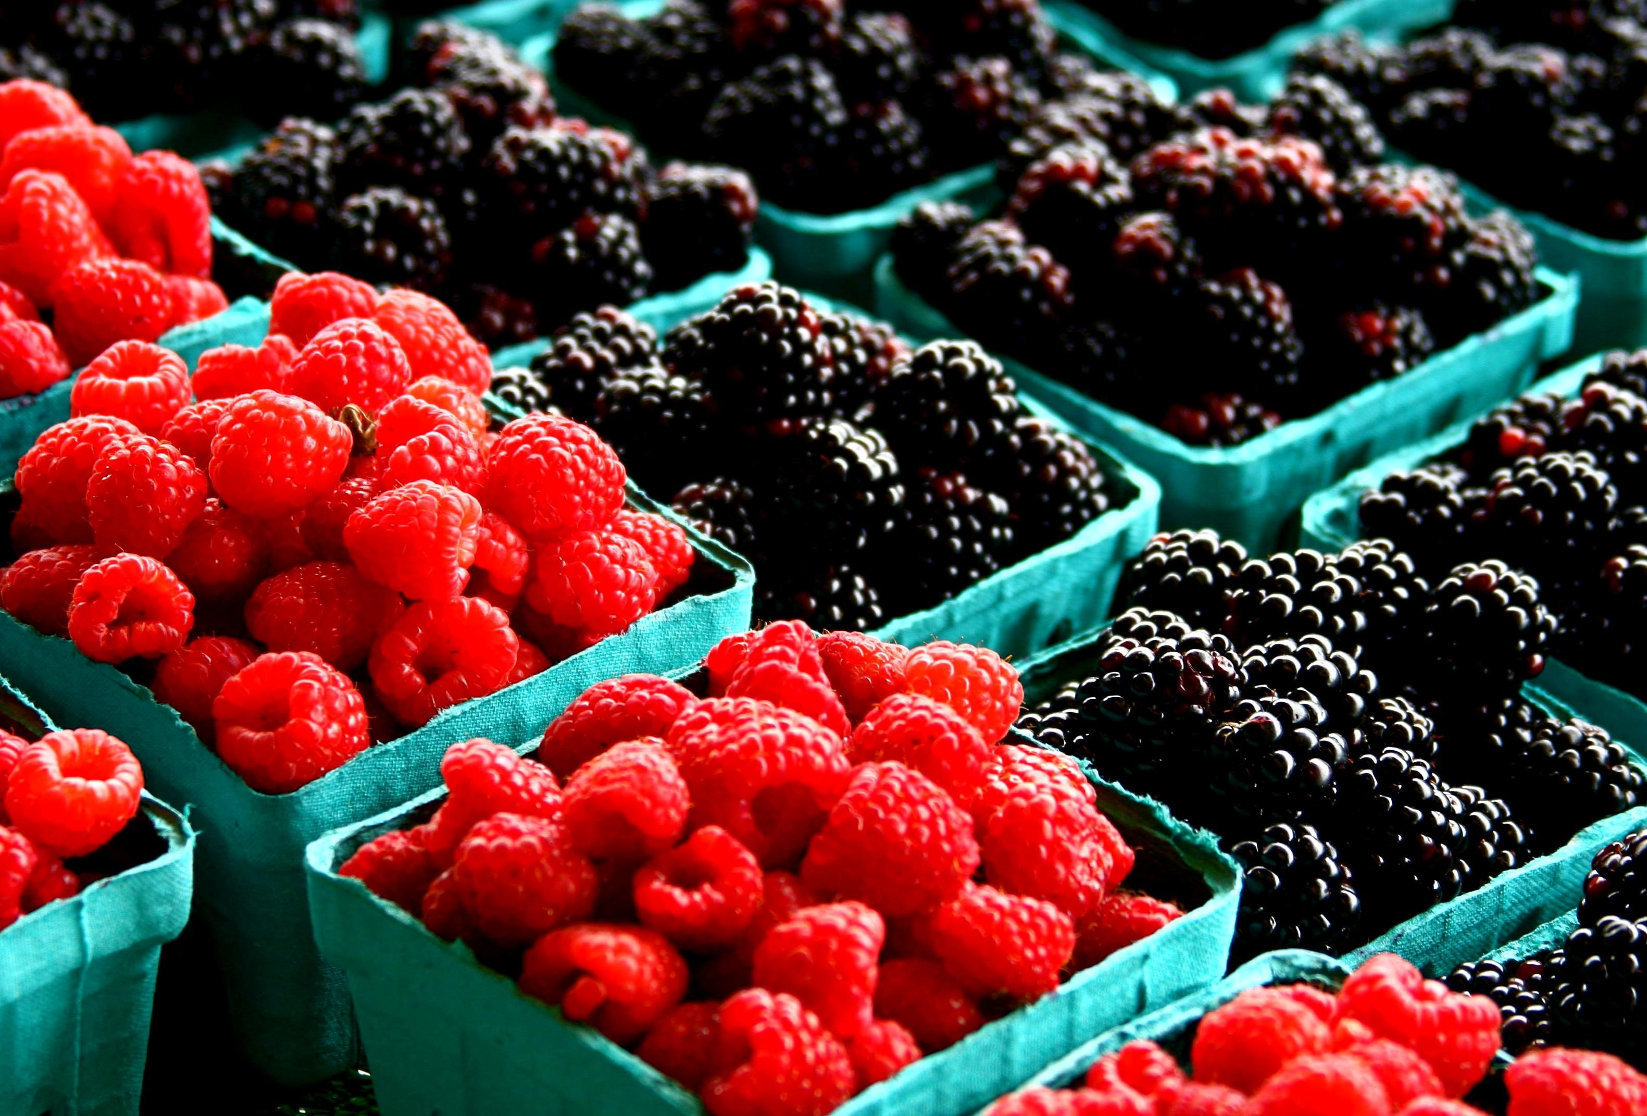 Berries, berries, berries.